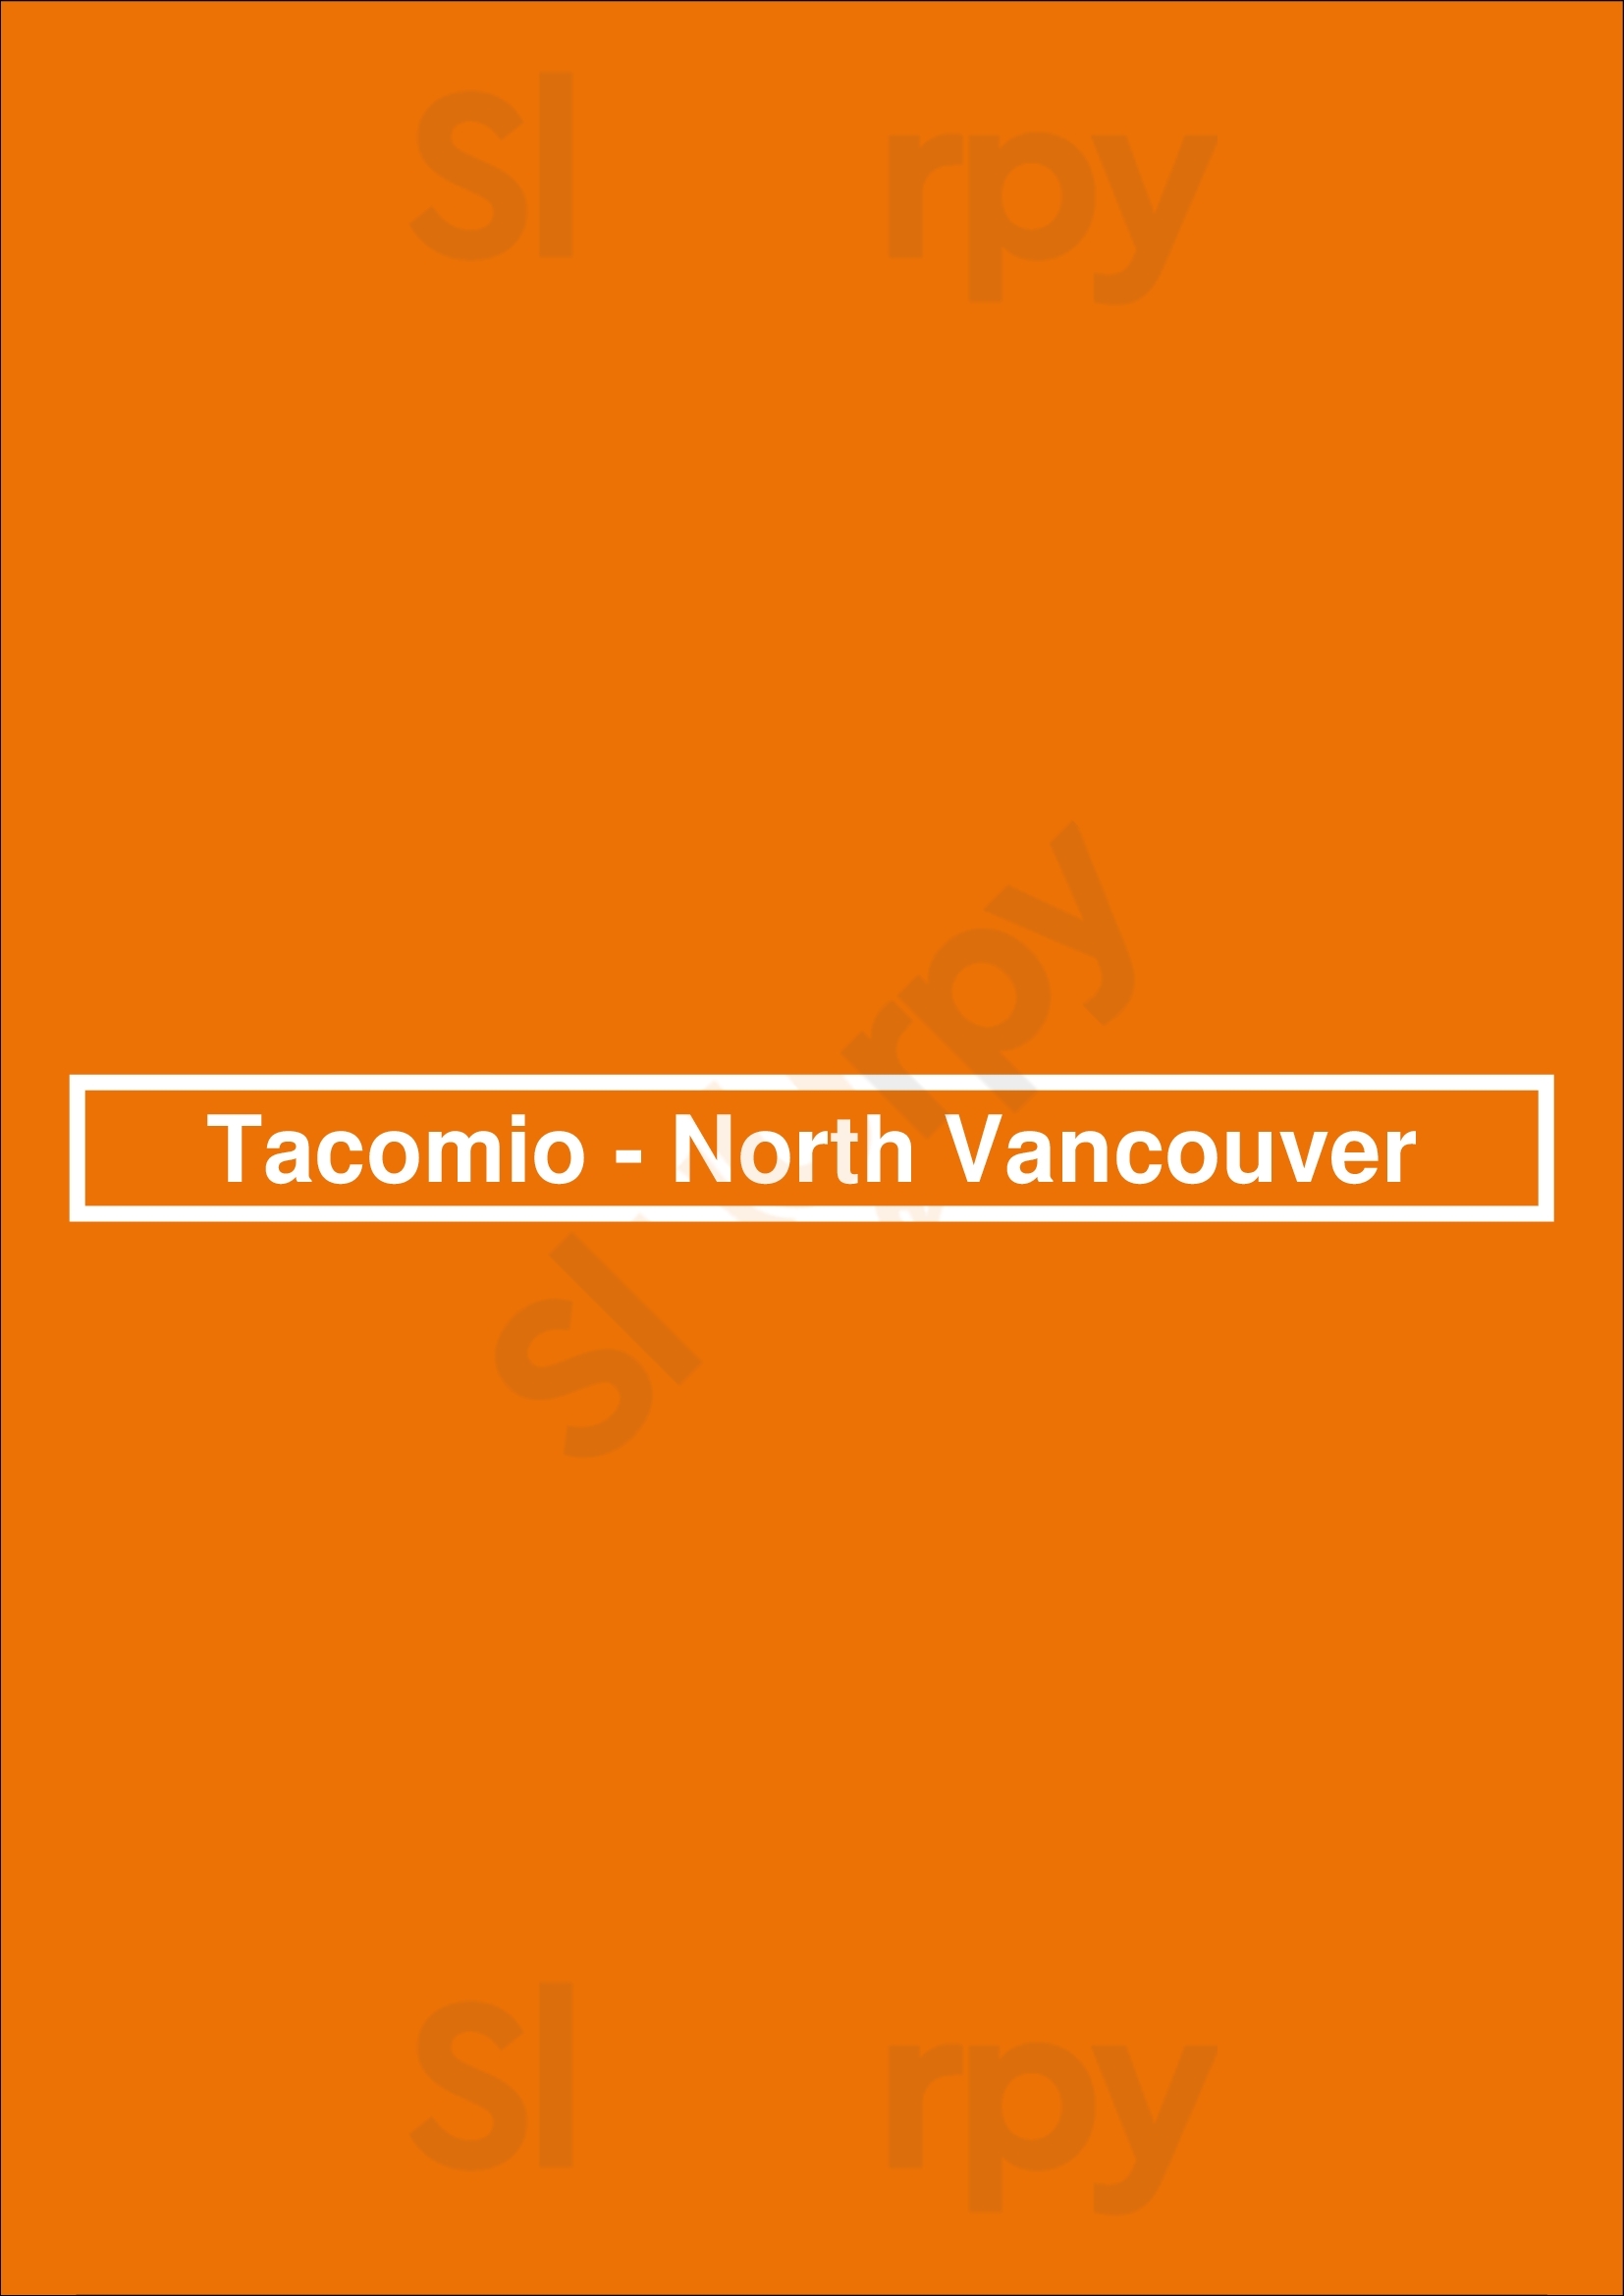 Tacomio - North Vancouver North Vancouver Menu - 1